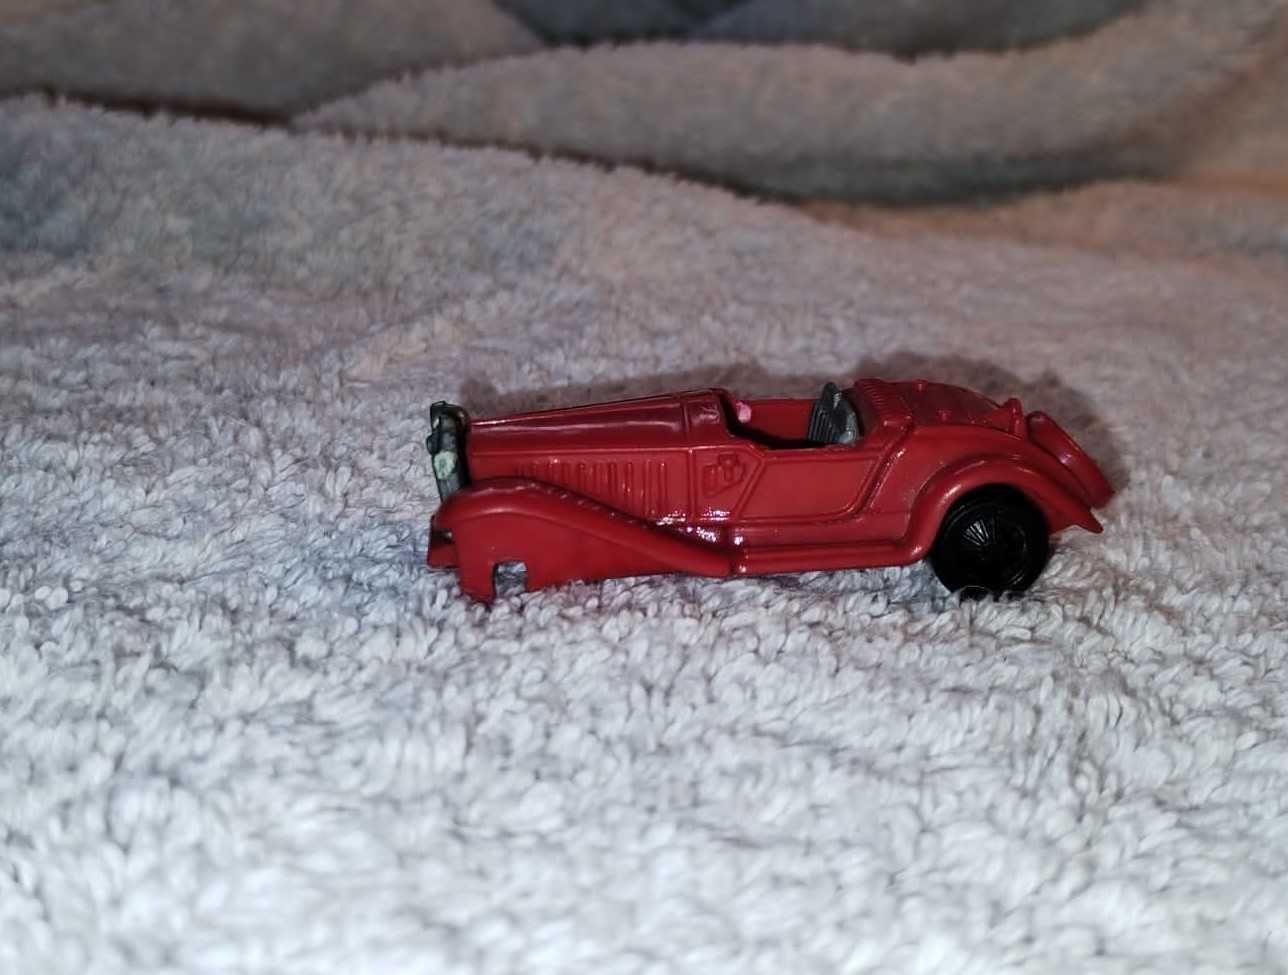 czerwony samochód, czerwony samochodzik, zabawka, figurka